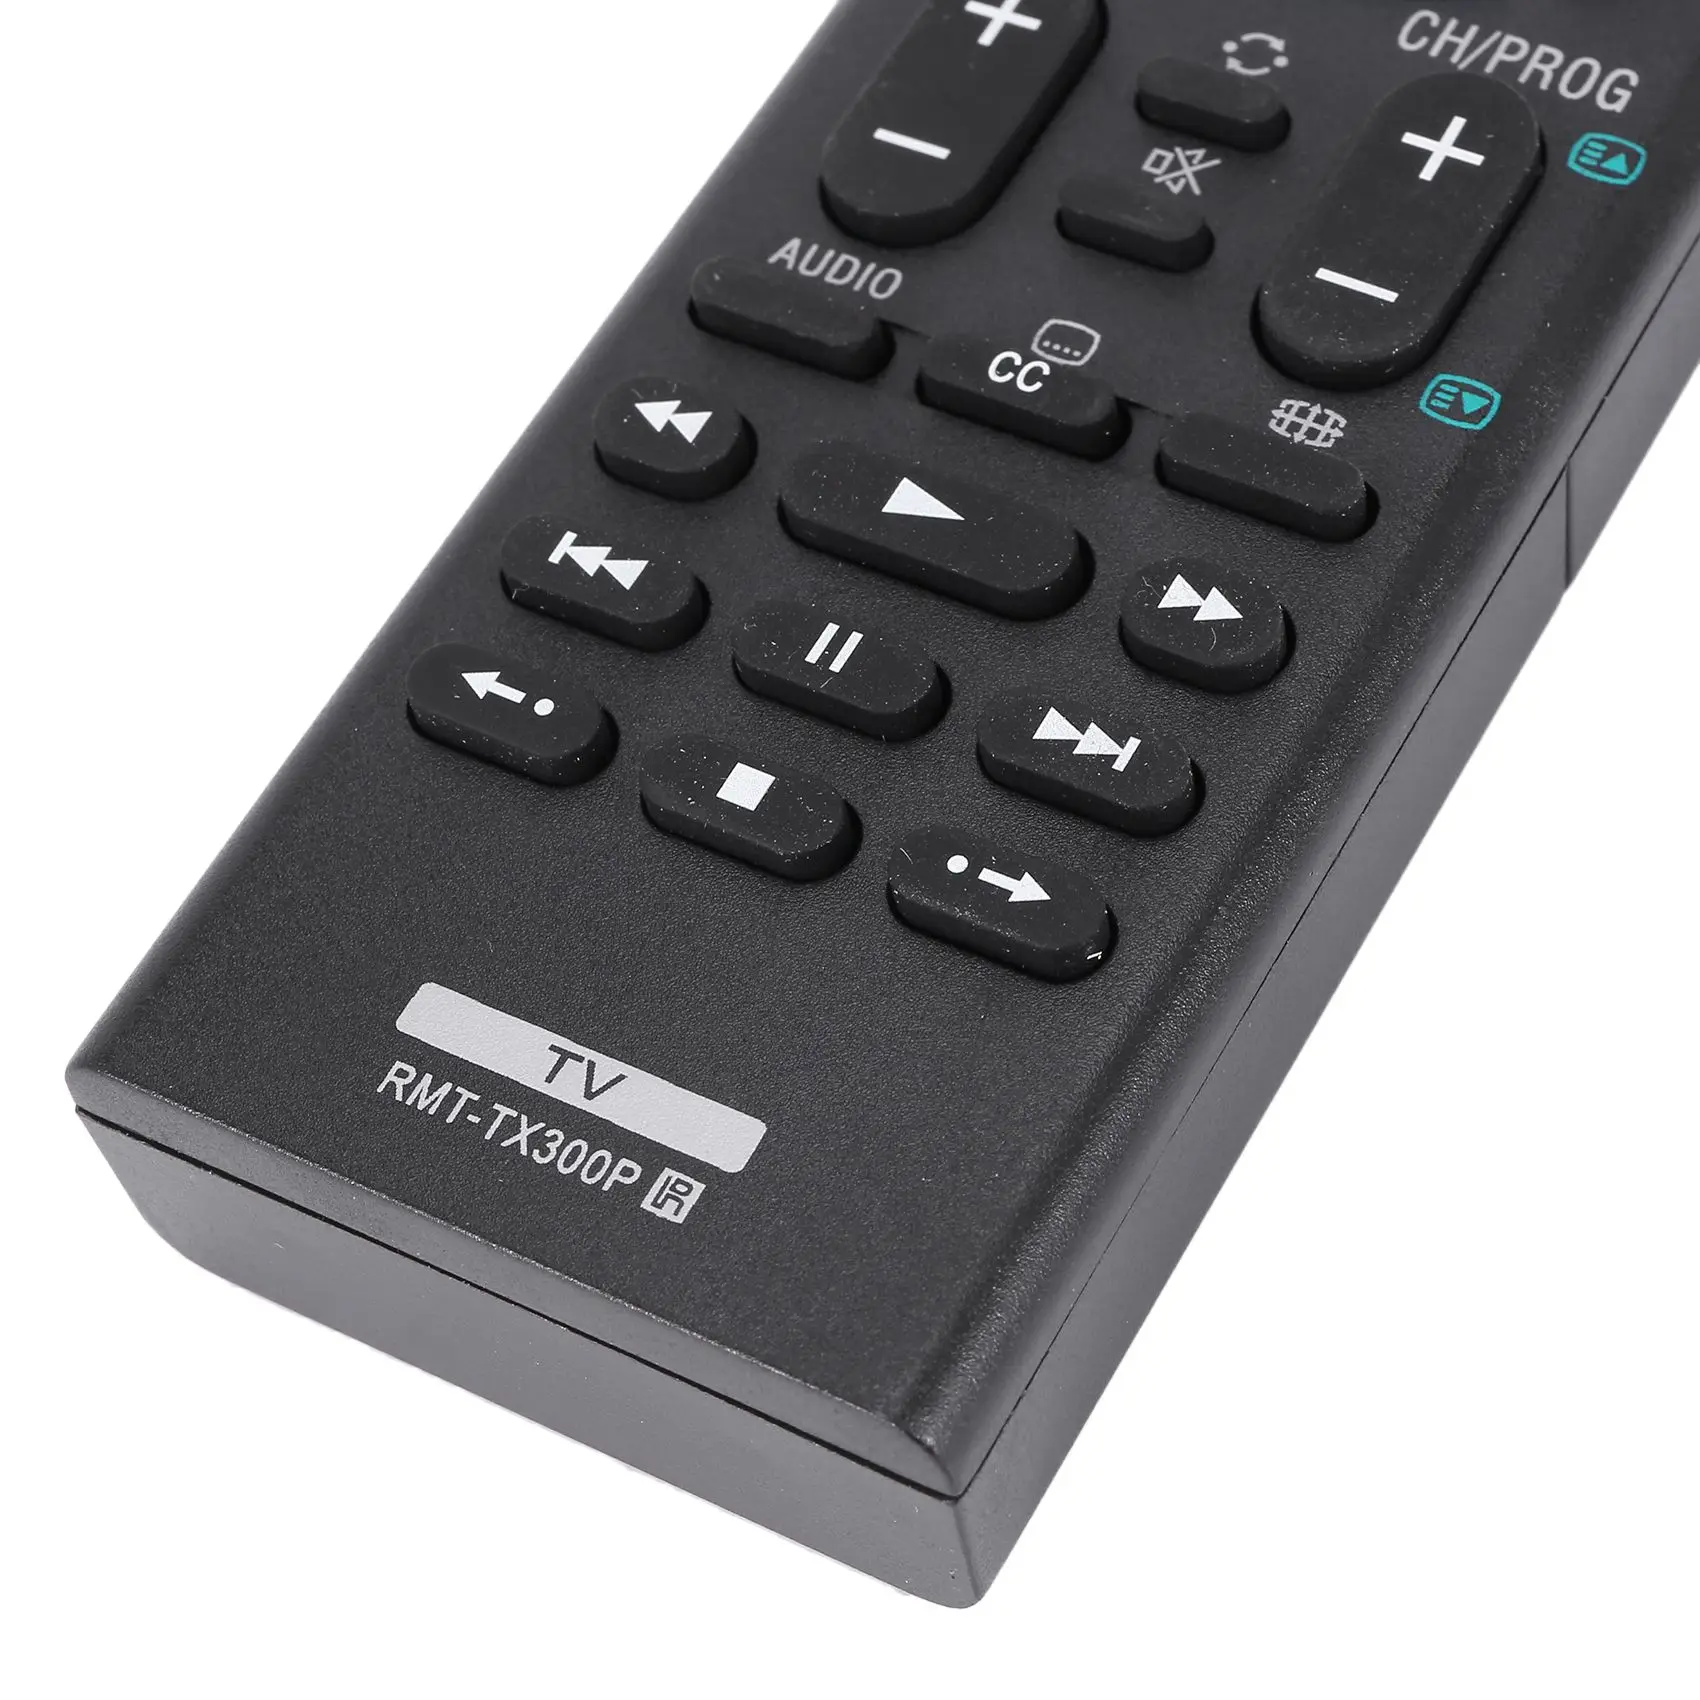 Daljinski upravljalnik RMT-TX300P za SONY TV RMT-TX300B RMT-TX300U z YouTube/NETFLIX